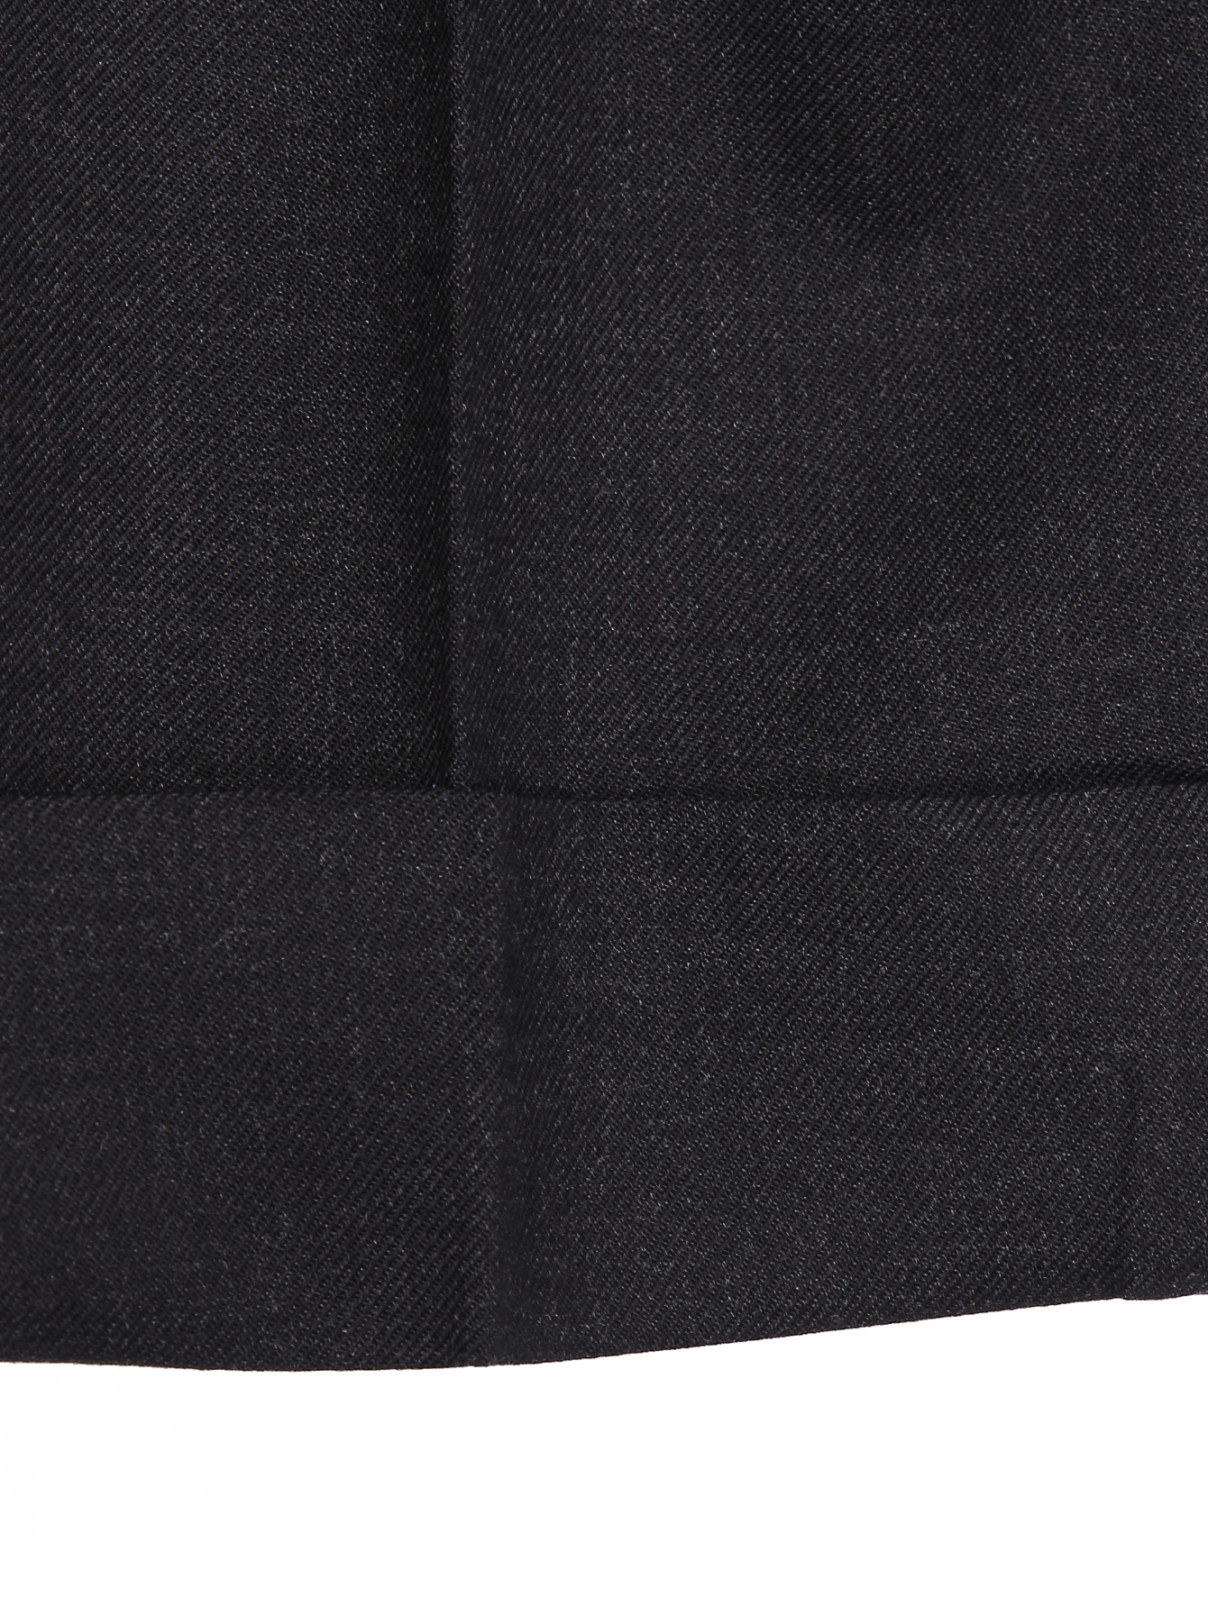 Брюки из шерсти с карманами Paul Smith  –  Деталь1  – Цвет:  Серый